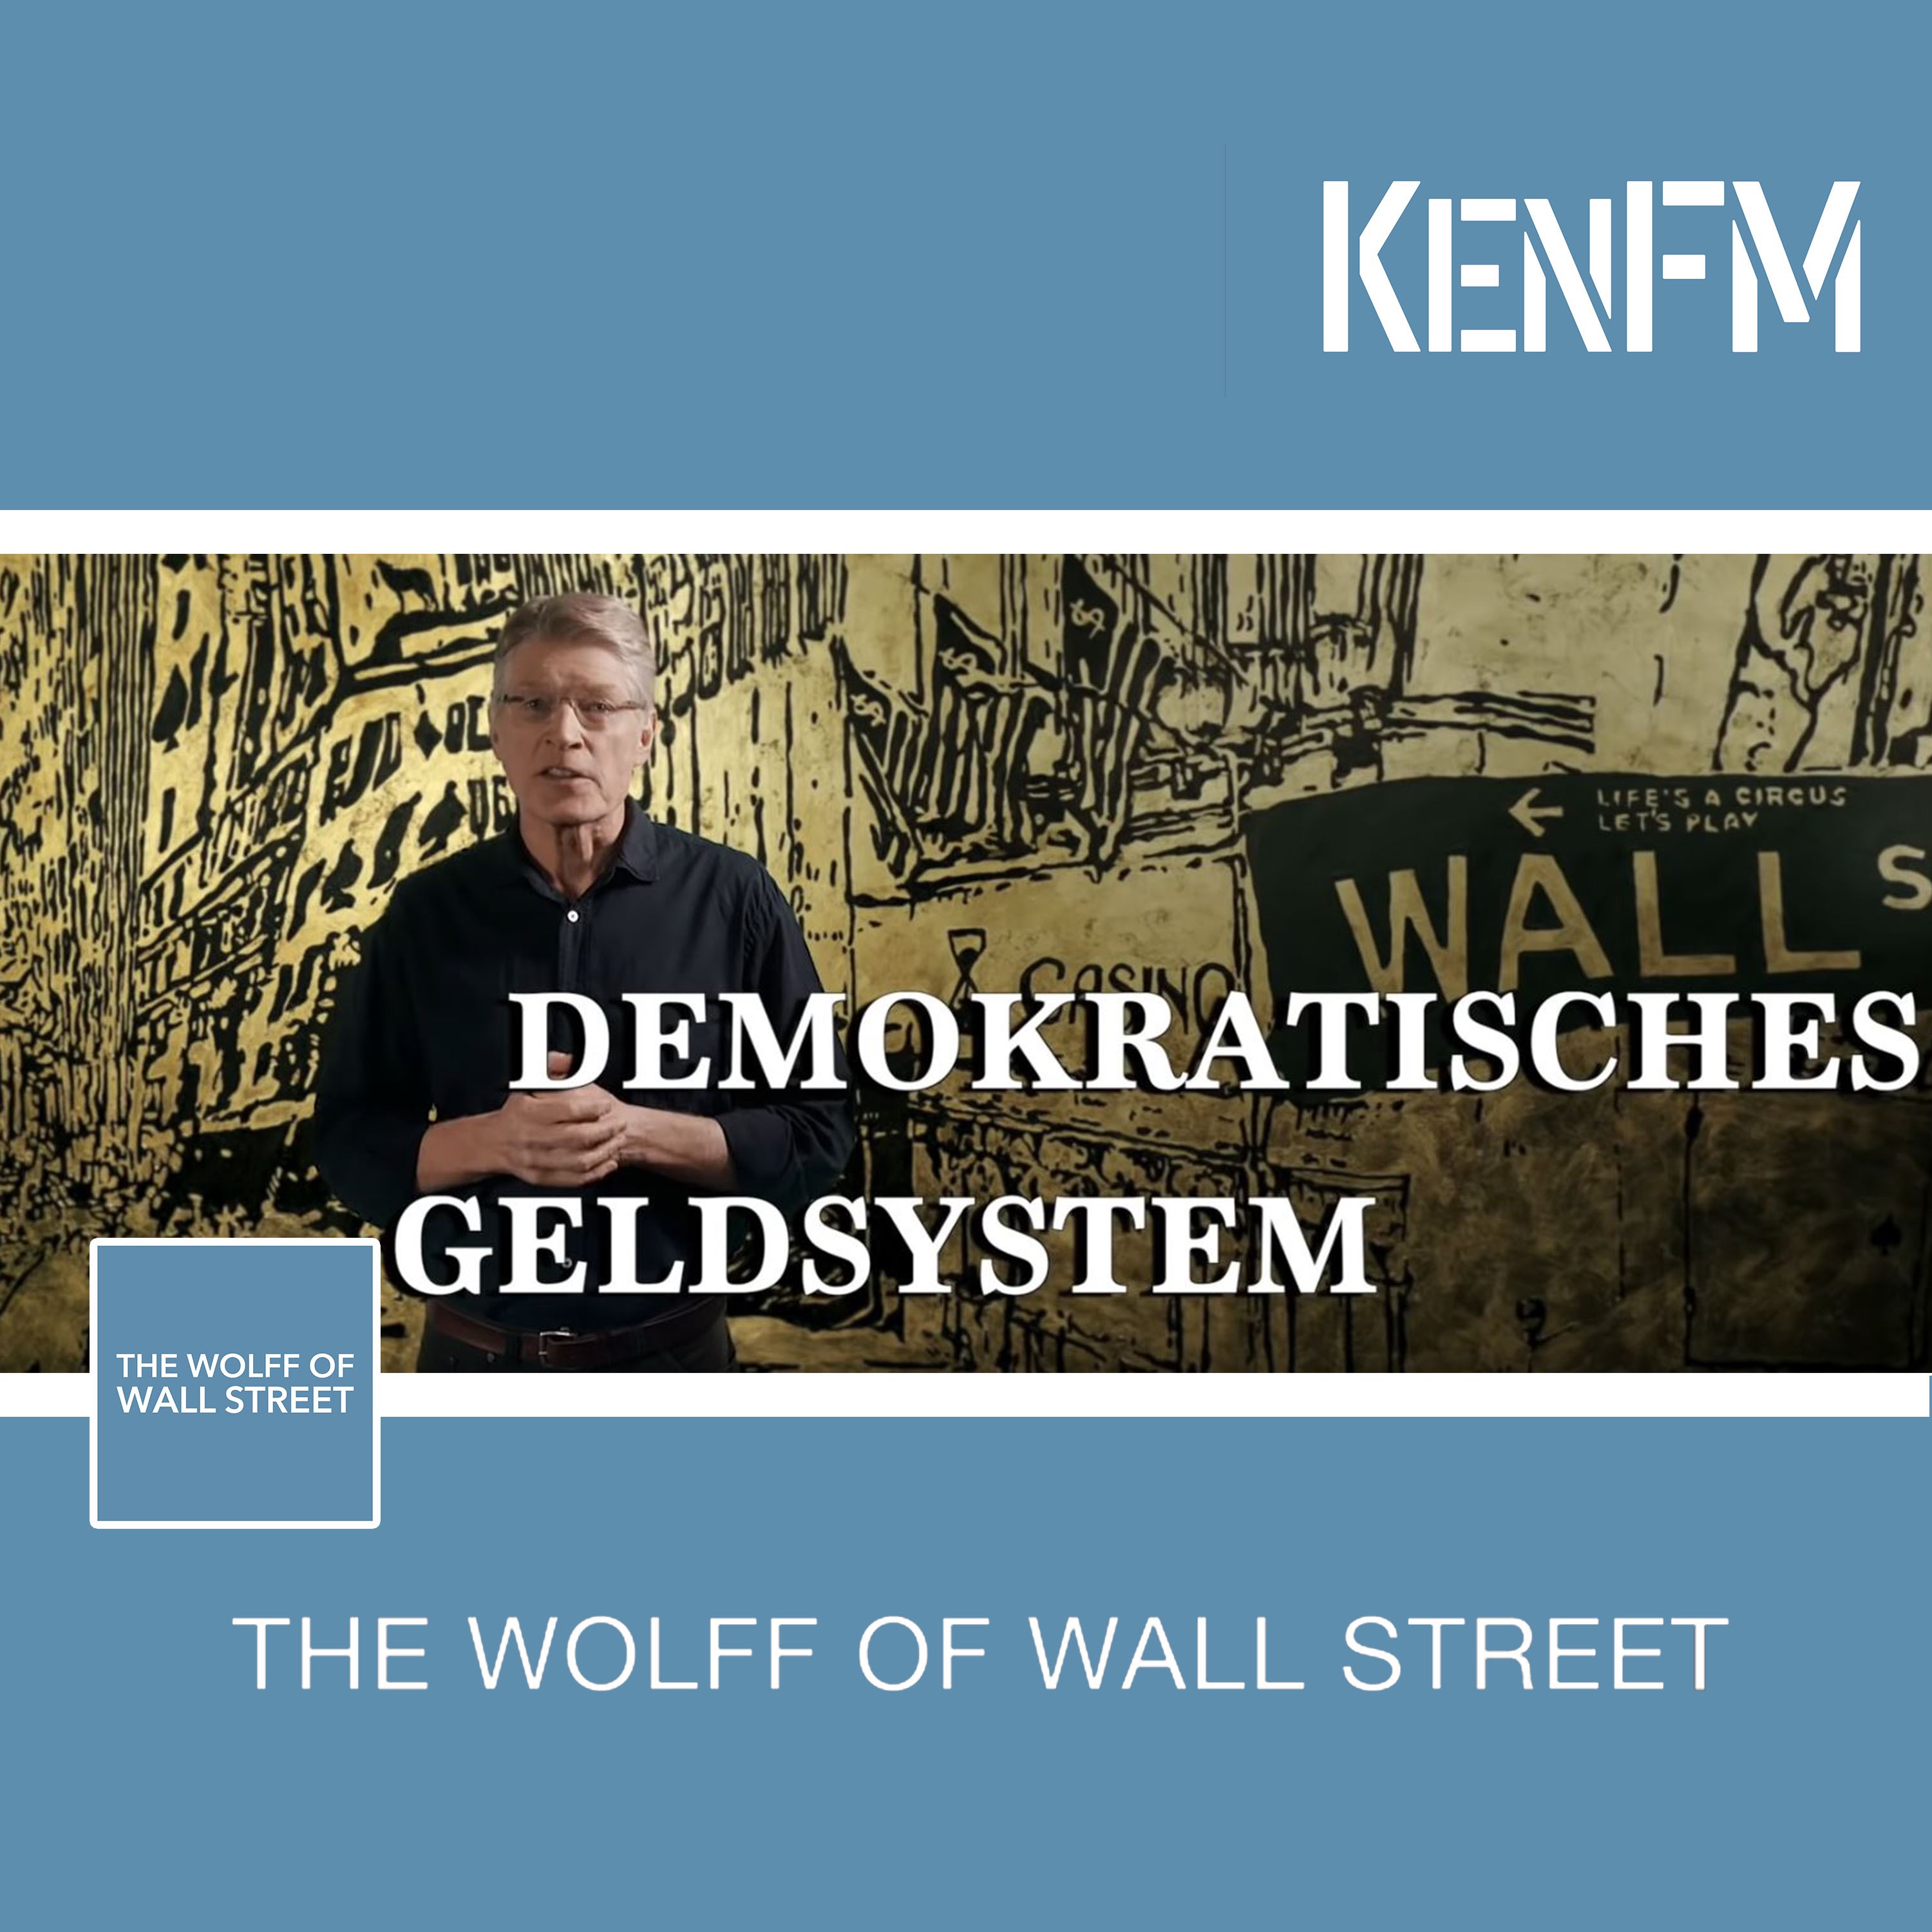 The Wolff of Wall Street: Demokratisches Geldsystem